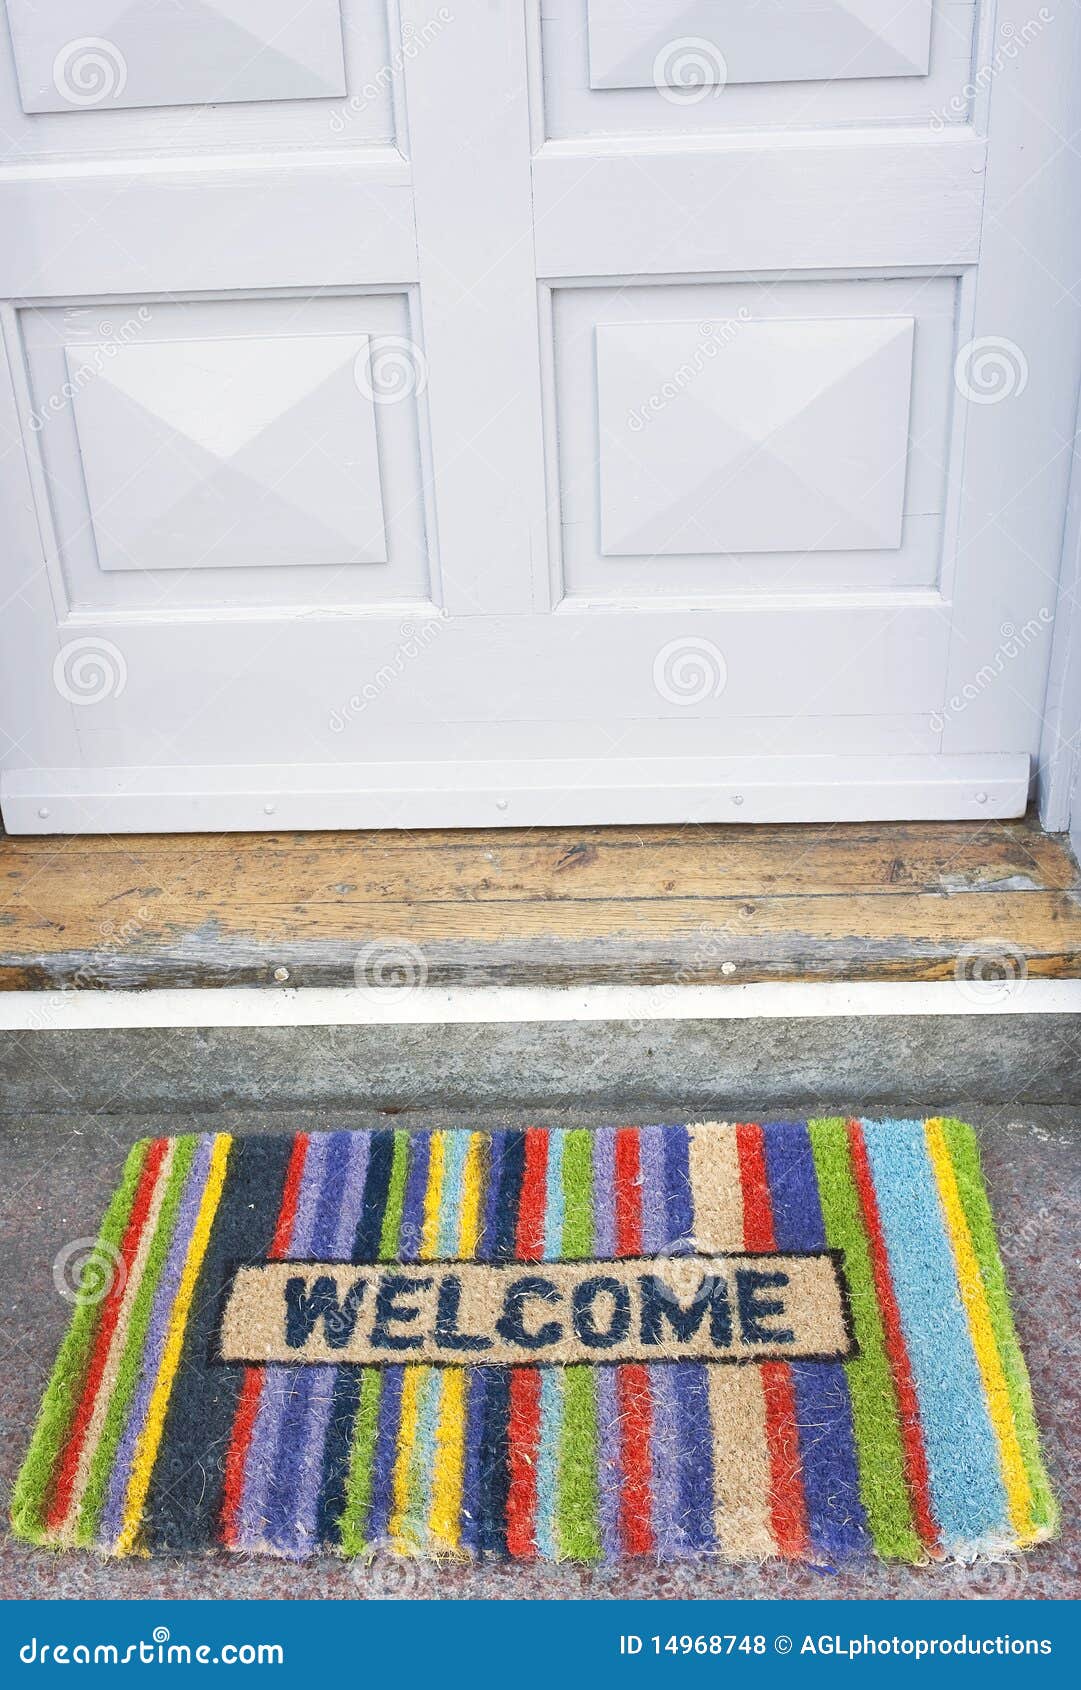 welcome doormat